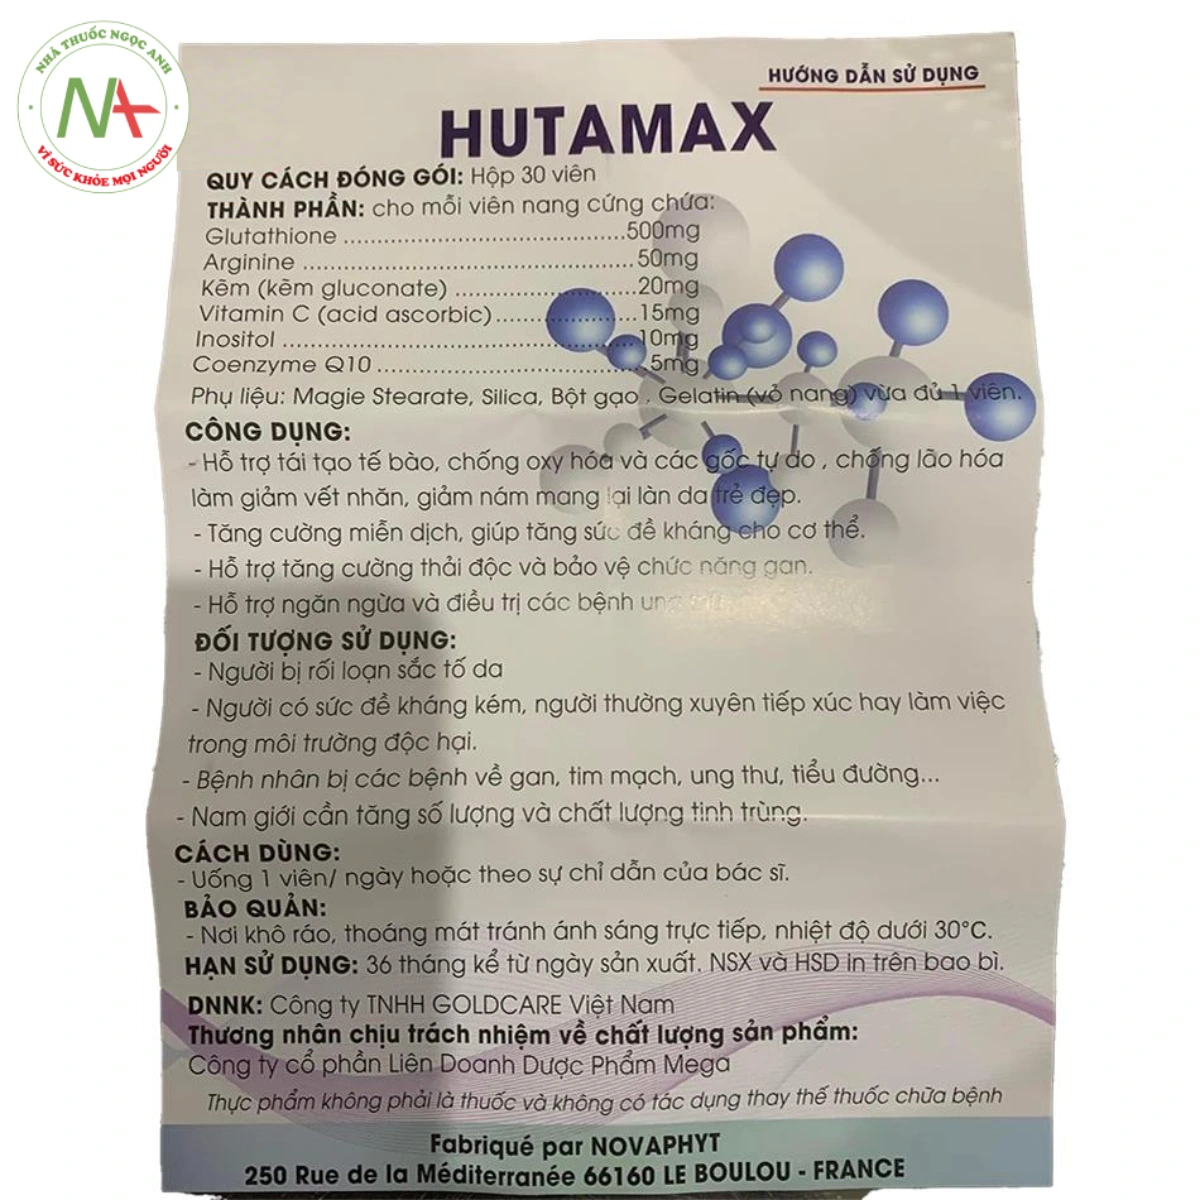 Hướng dẫn sử dụng Hutamax